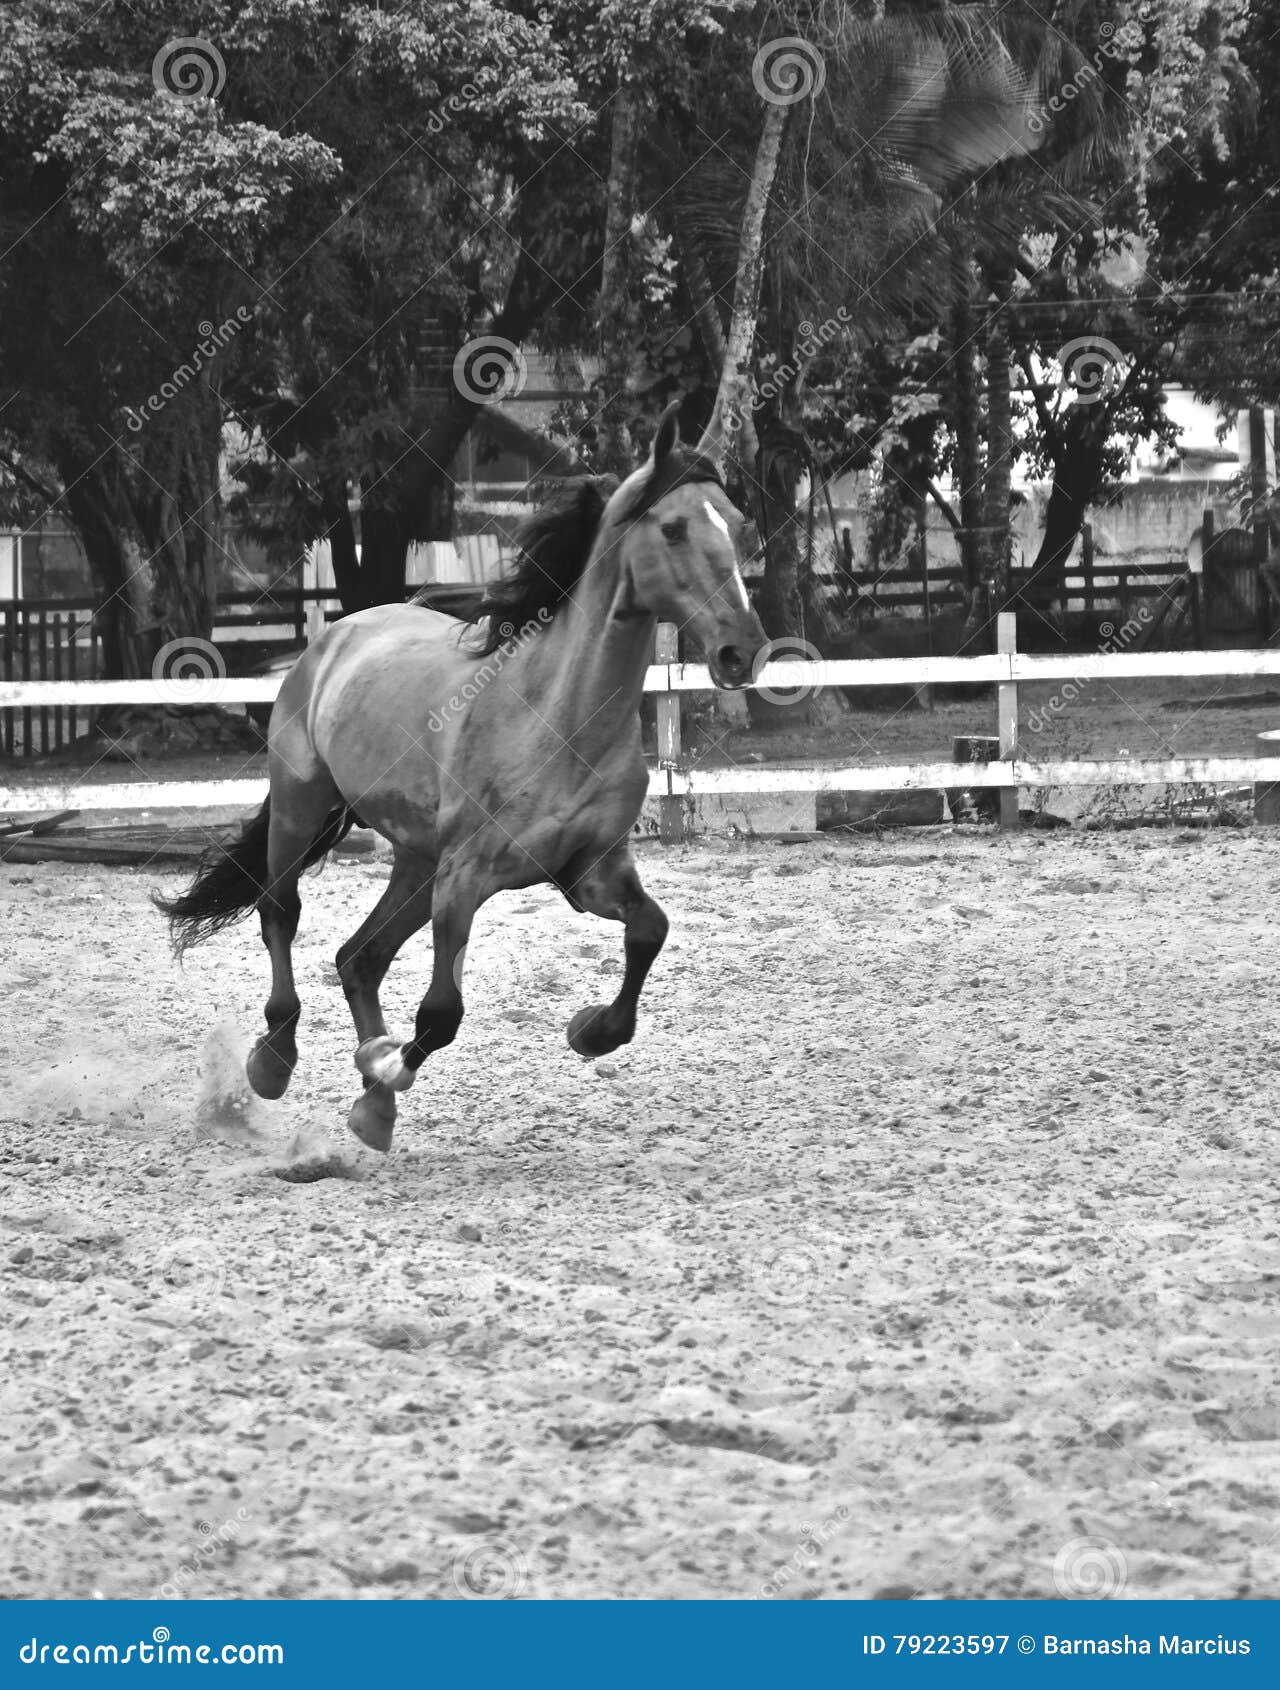 the horse. haras in rio de janeiro